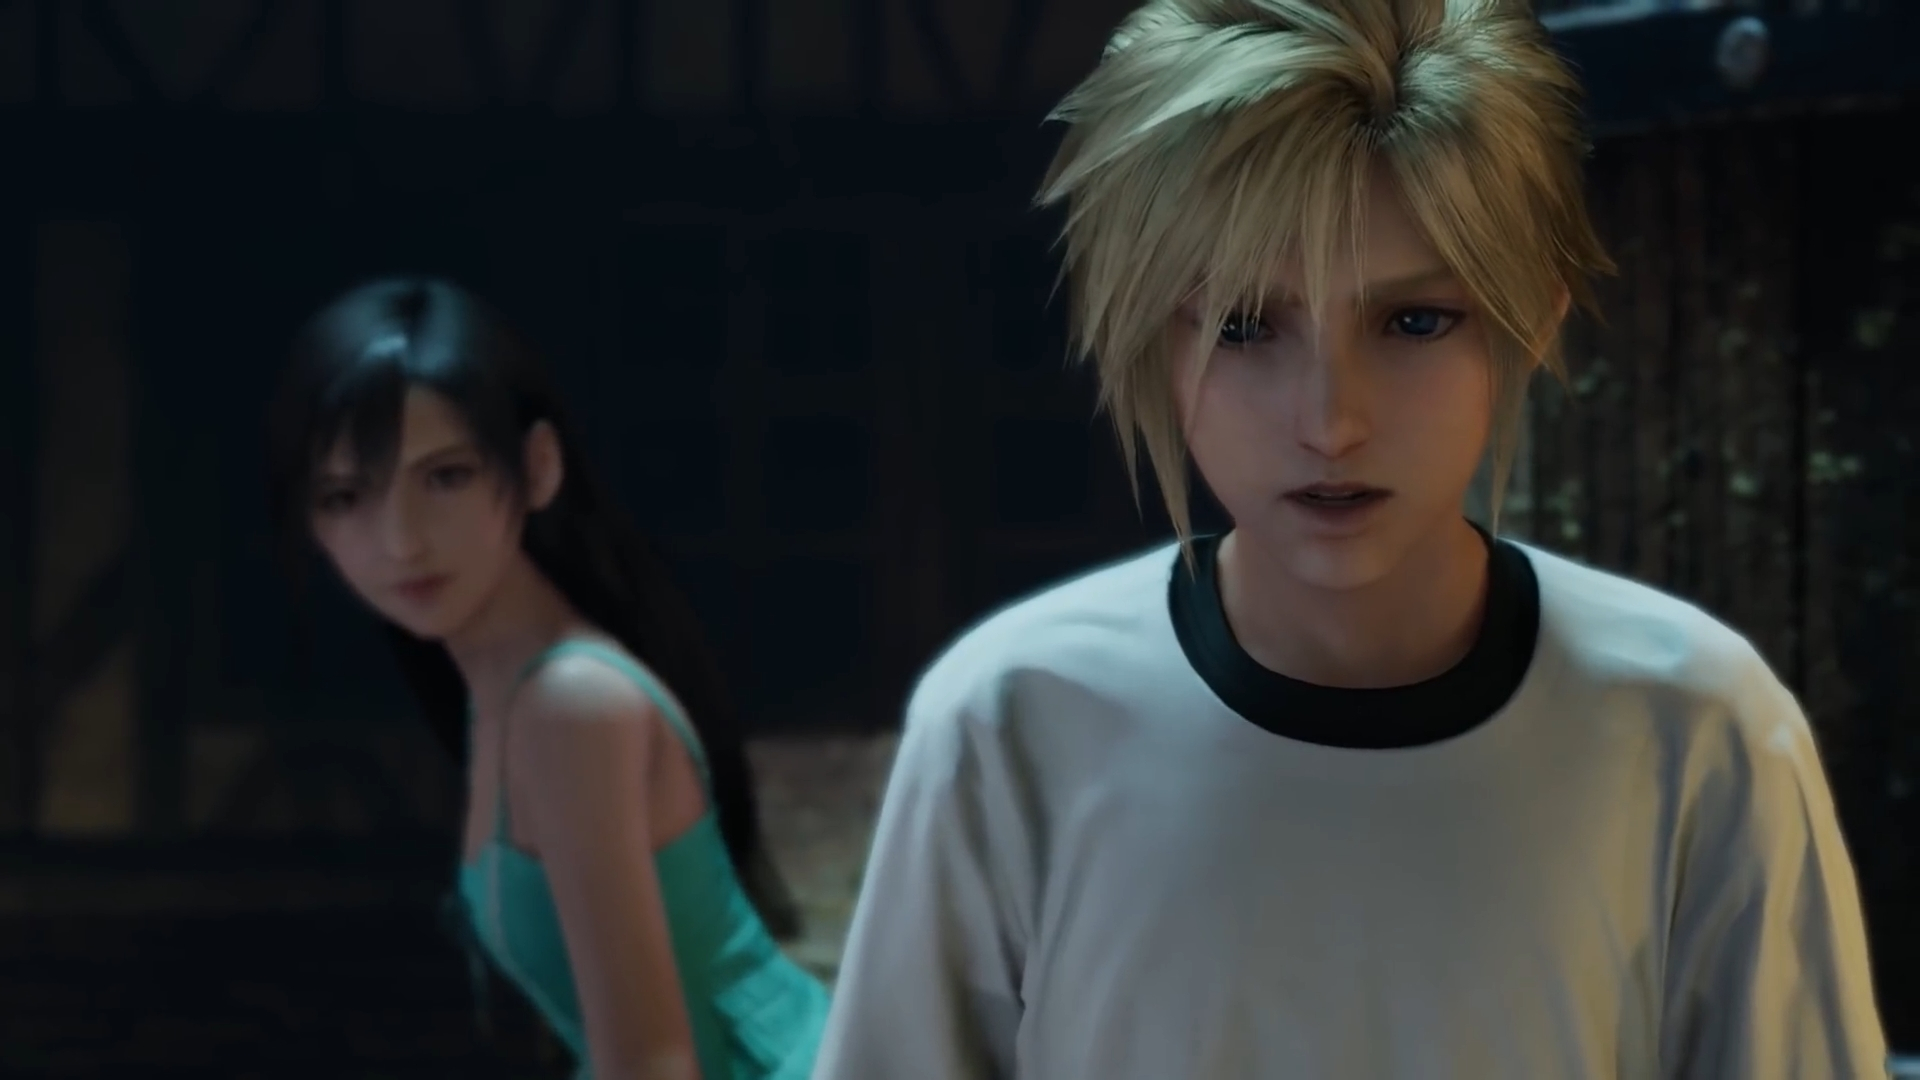 Final Fantasy VII Remake: Square Enix requisitou mudanças nos